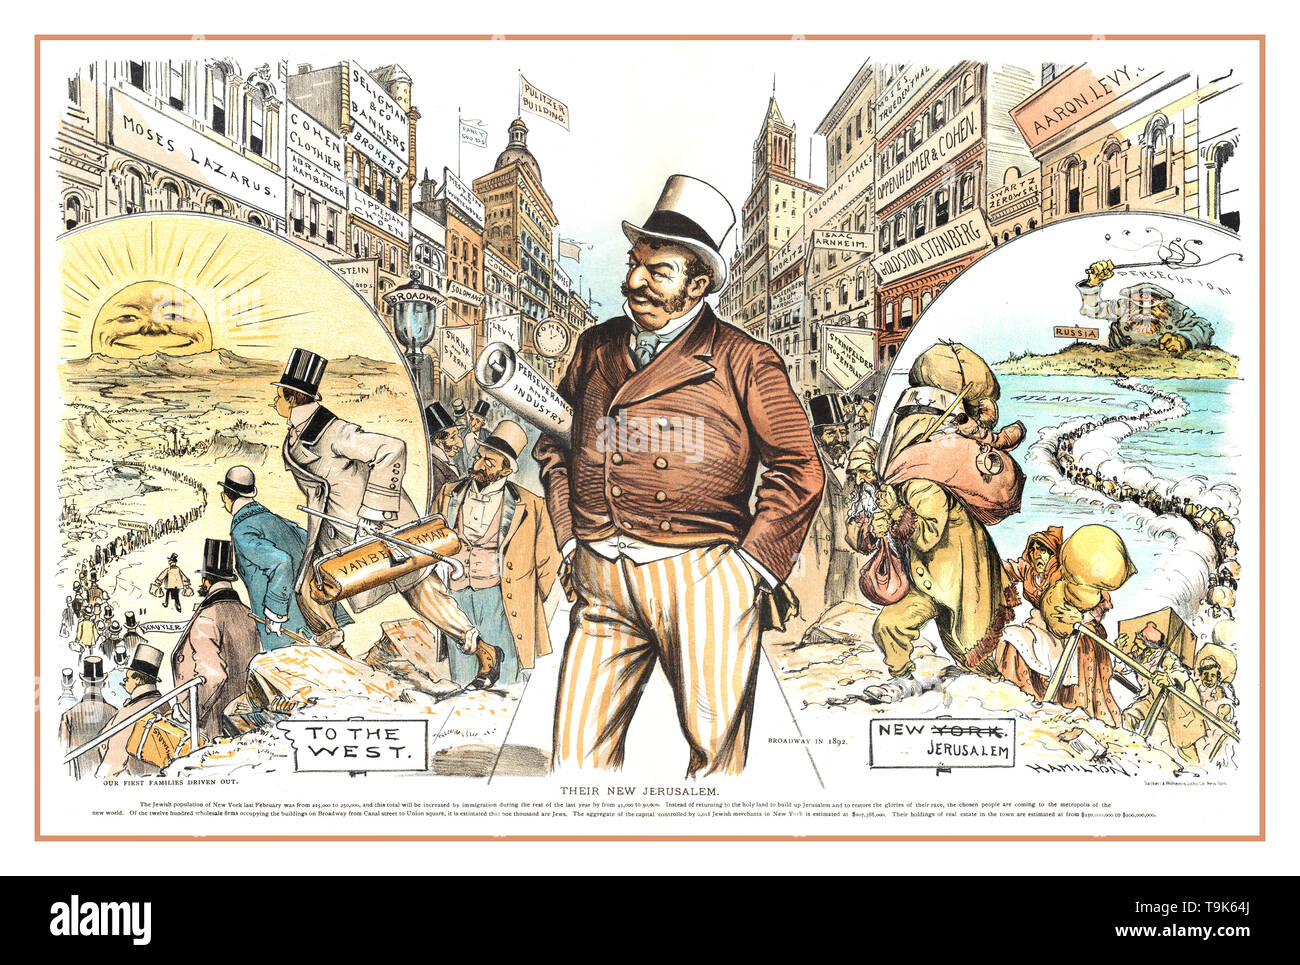 Vintage 1890's USA politique anti-juif antisémite cartoon style Affiche de propagande les stéréotypes juifs - 'leur' Nouvelle Jérusalem Amérique 1892 Banque D'Images